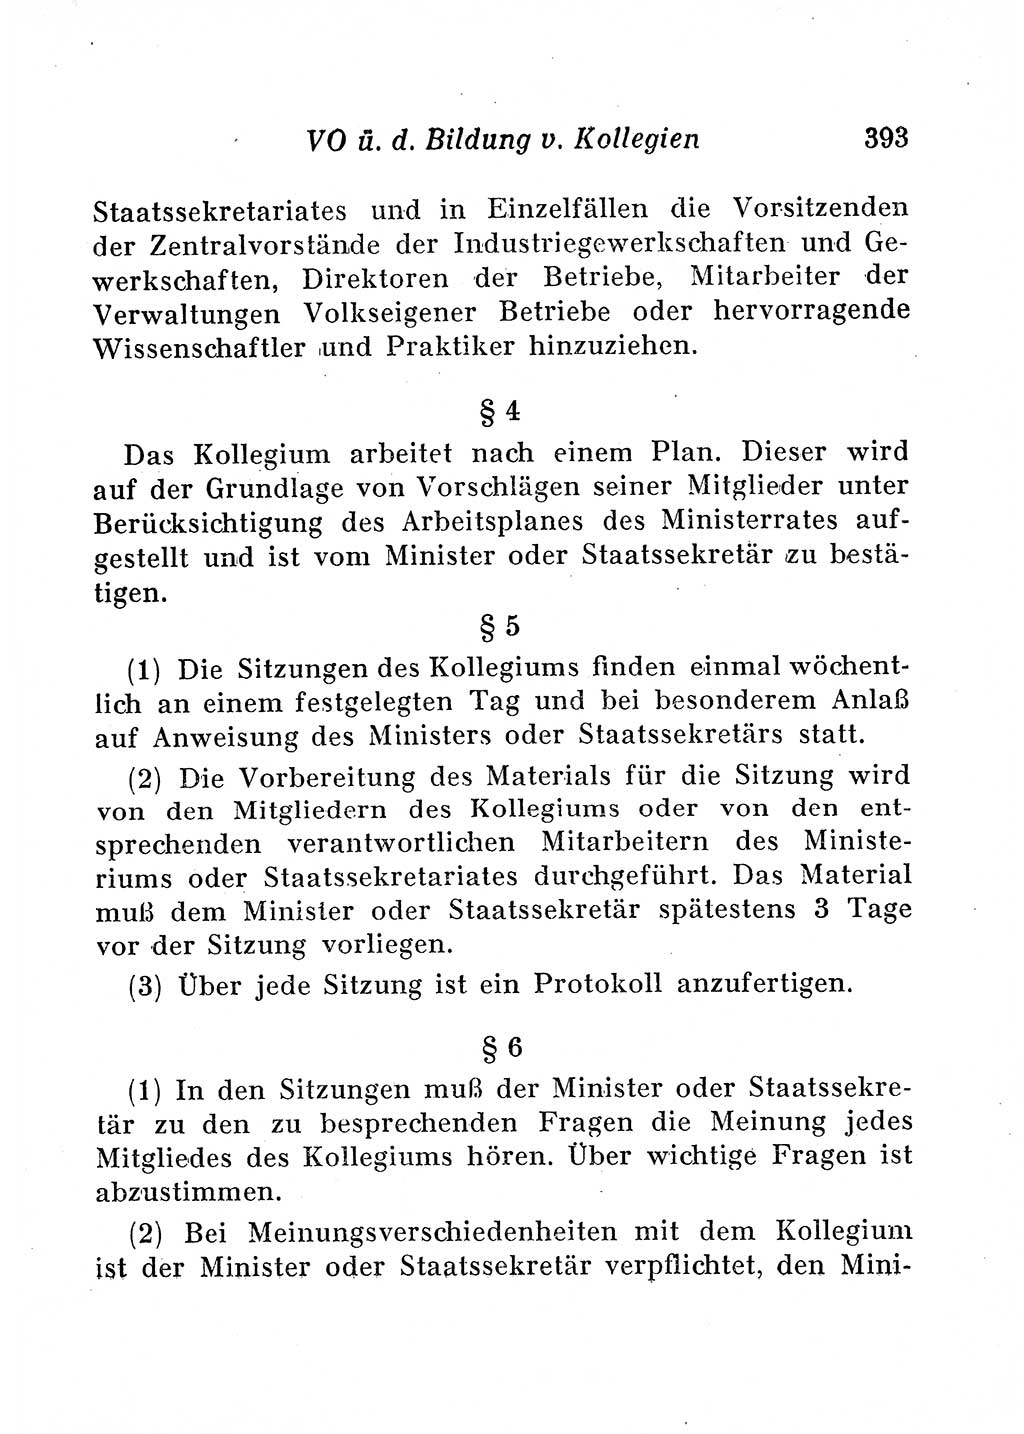 Staats- und verwaltungsrechtliche Gesetze der Deutschen Demokratischen Republik (DDR) 1958, Seite 393 (StVerwR Ges. DDR 1958, S. 393)